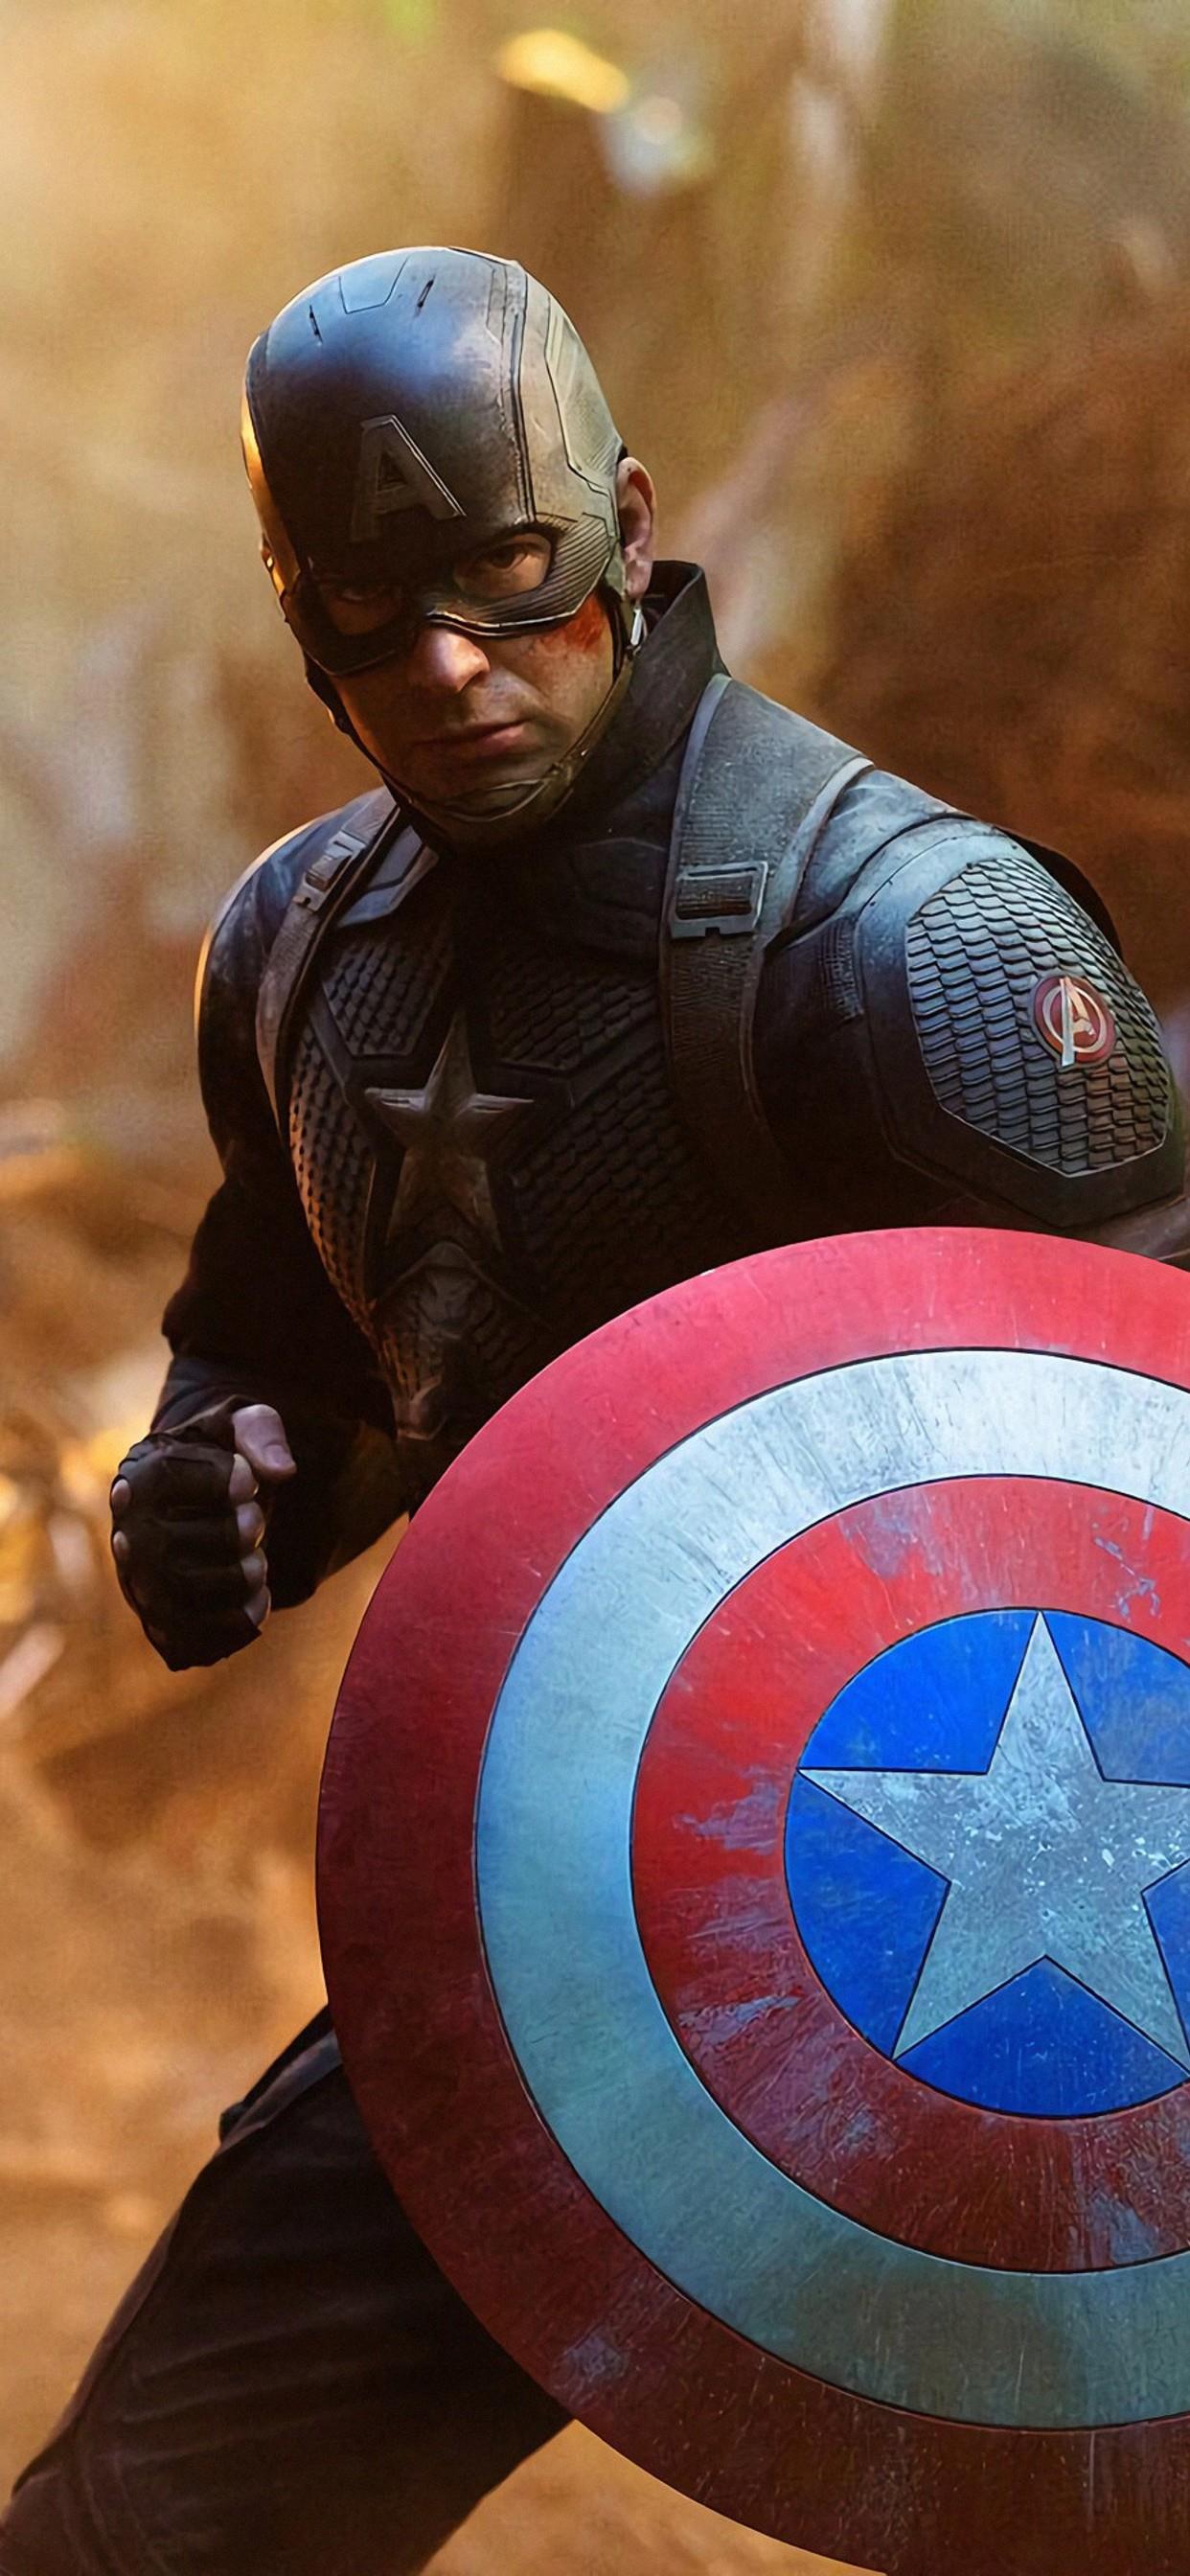 Captain America Avengers Endgame - 1242x2688 Wallpaper 